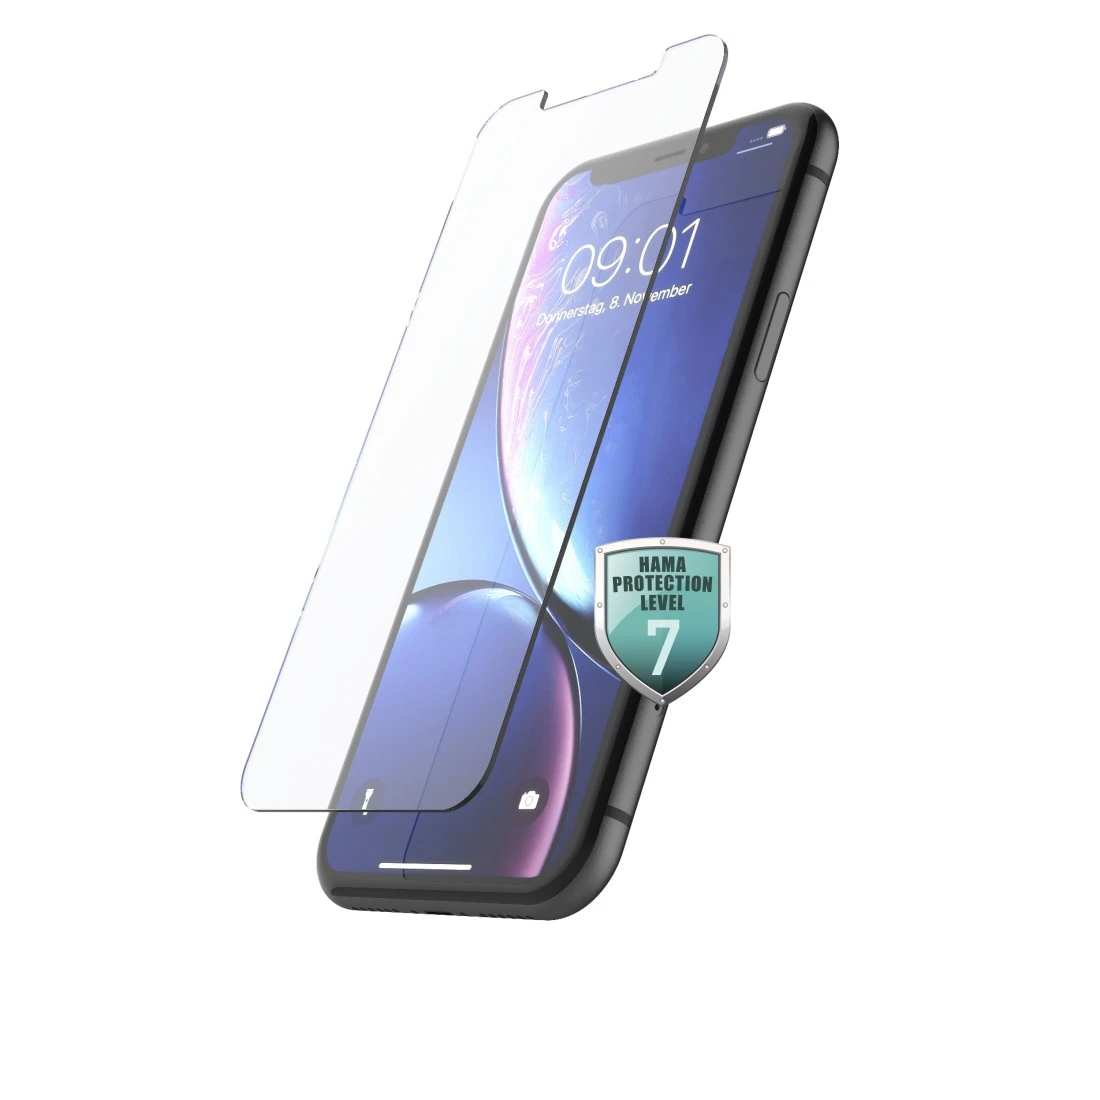 Beschermglas voor Apple iPhone XR/11 | Hama